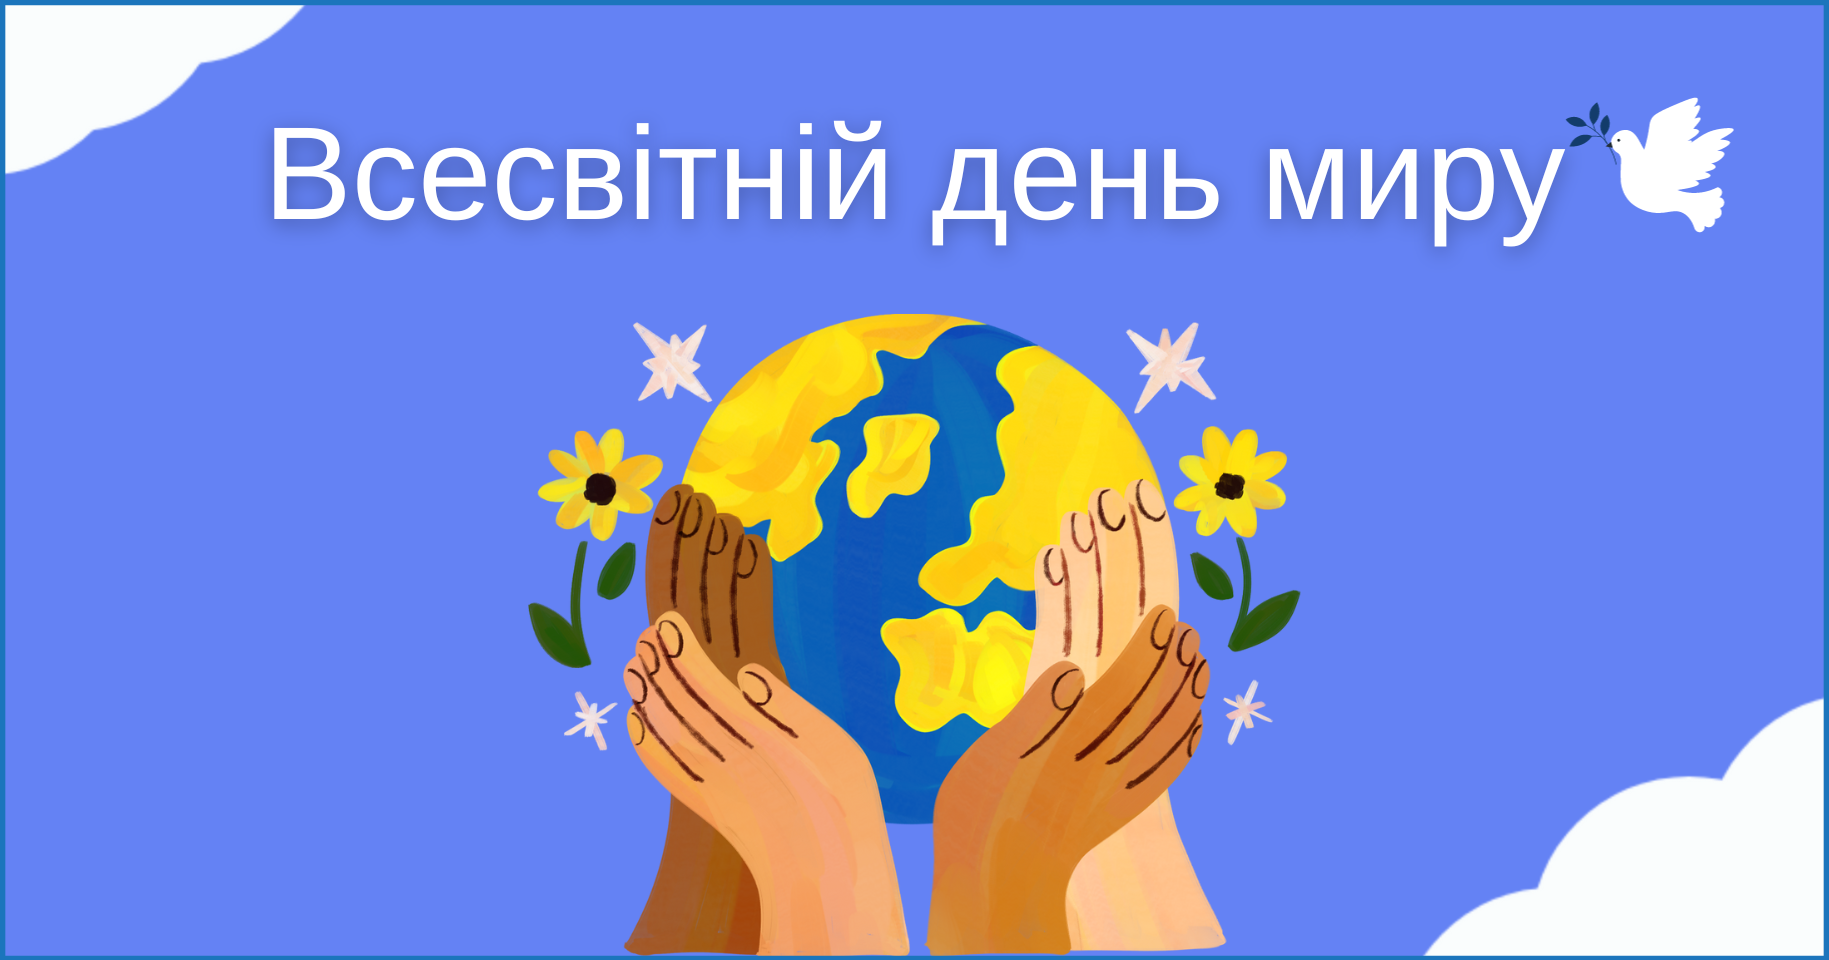 Всесвітній день миру